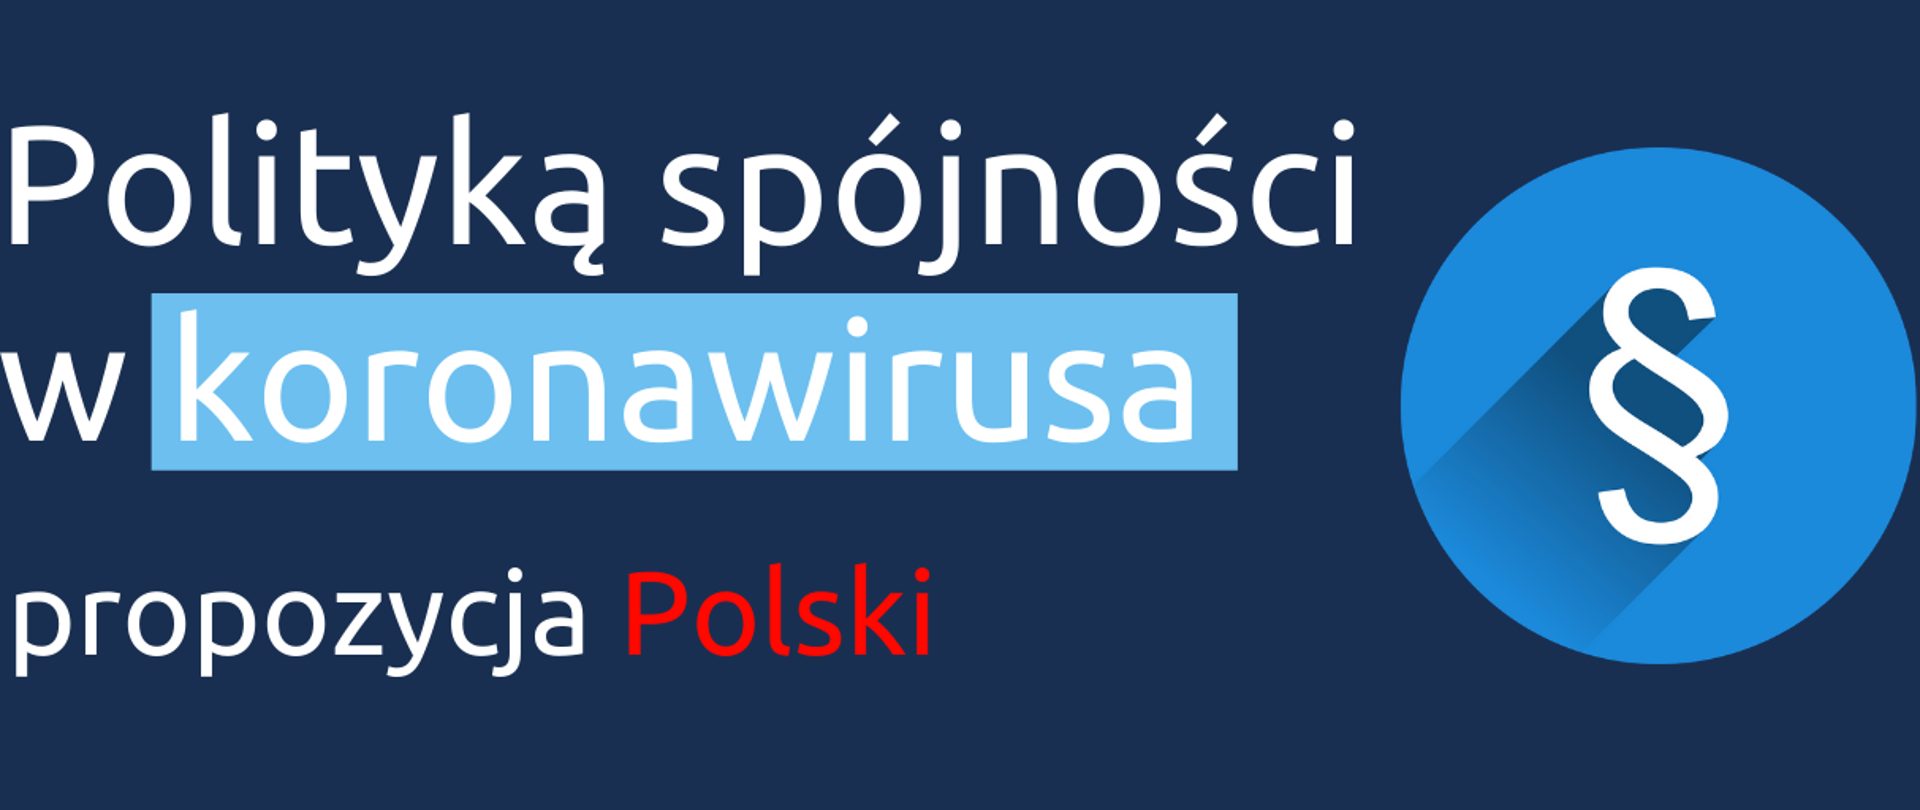 Biały tekst na granatowym tle: Polityką spójności w koronawirusa, propozycja Polski (wyraz Polski ma kolor czerwony). Obok tekstu symbol paragrafu